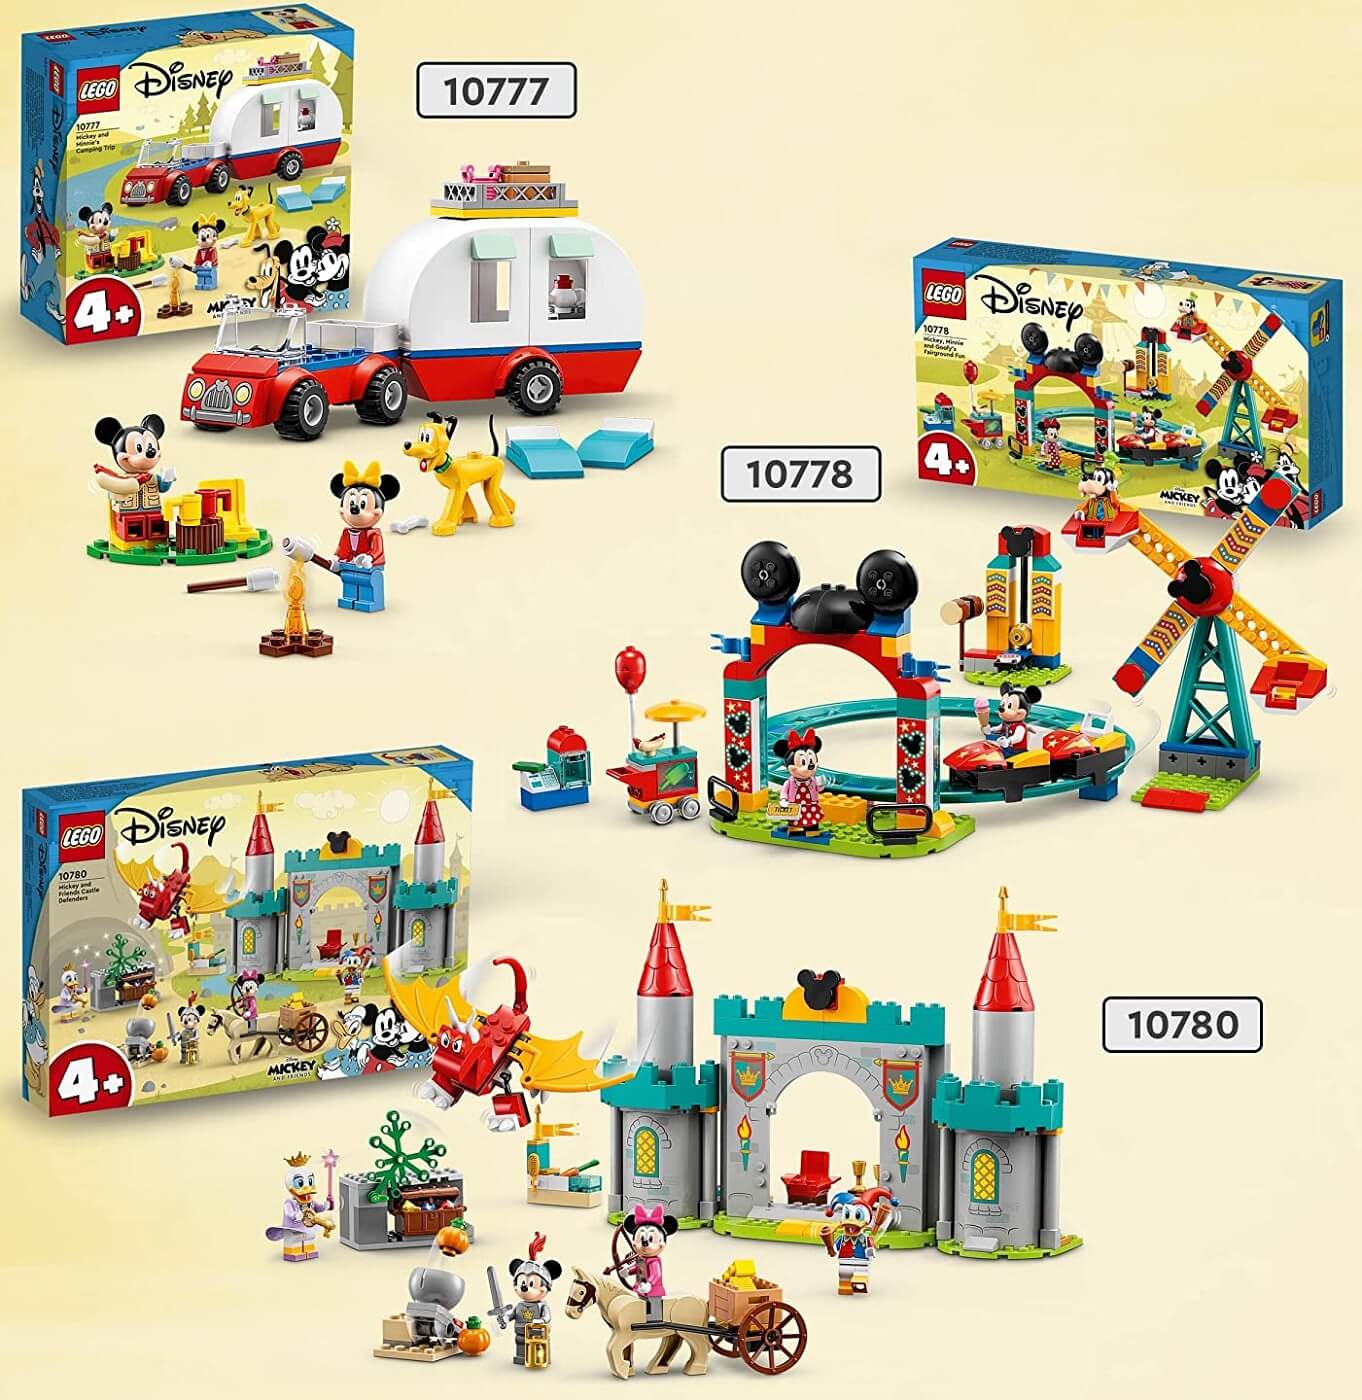 Excursion de Campo de Mickey Mouse y Minnie ( Lego 10777 ) imagen e